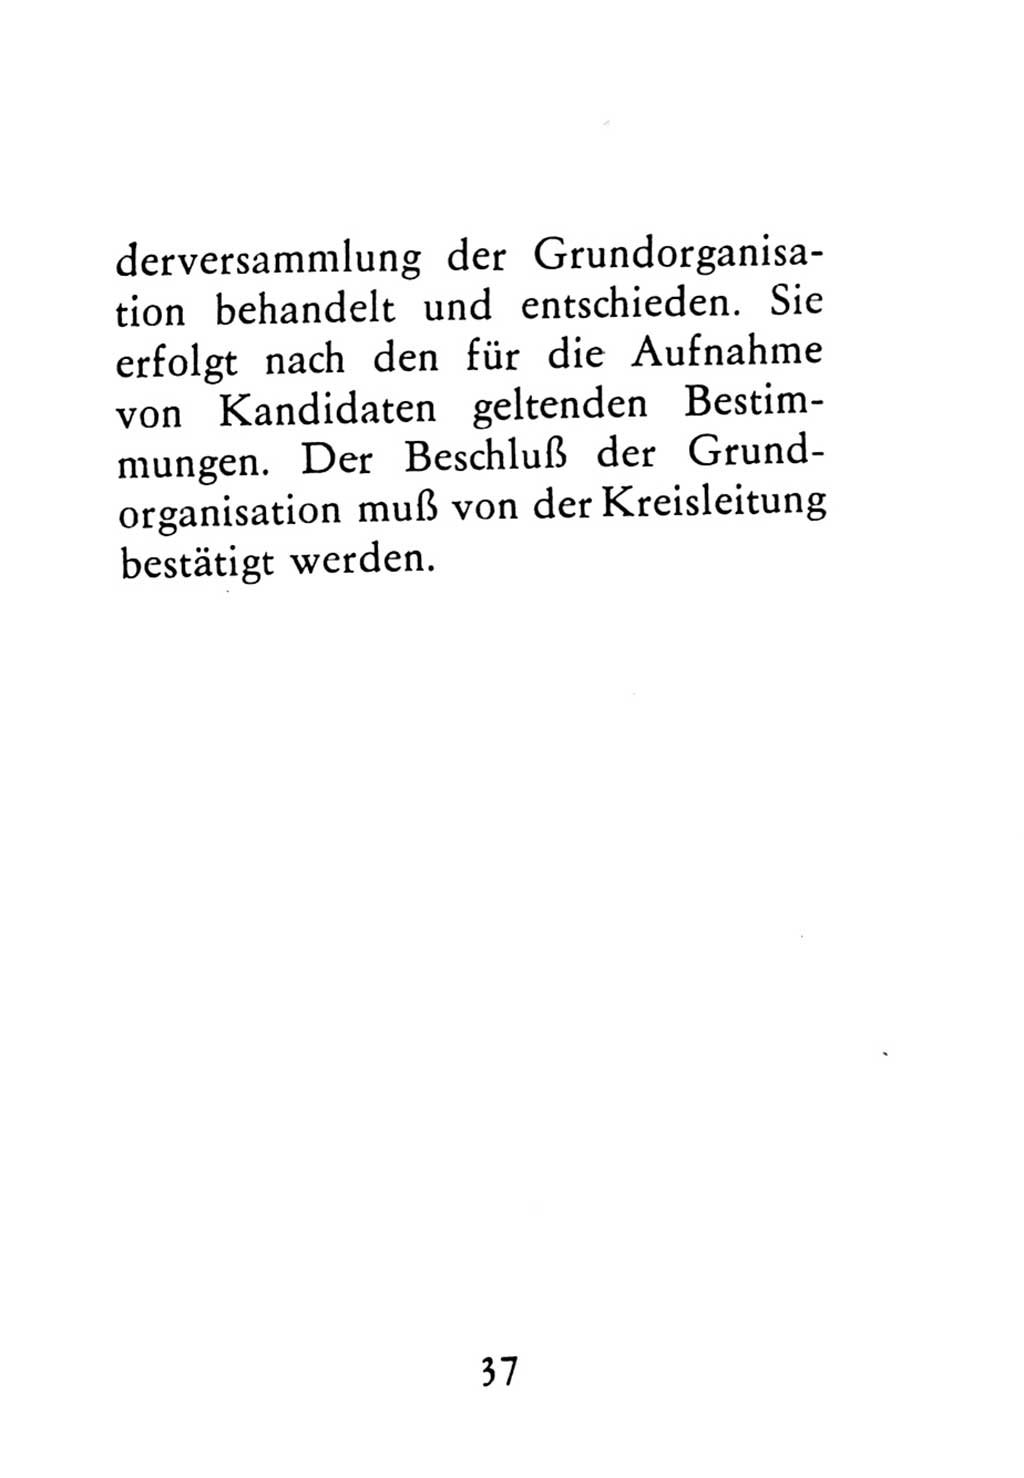 Statut der Sozialistischen Einheitspartei Deutschlands (SED) 1976, Seite 37 (St. SED DDR 1976, S. 37)